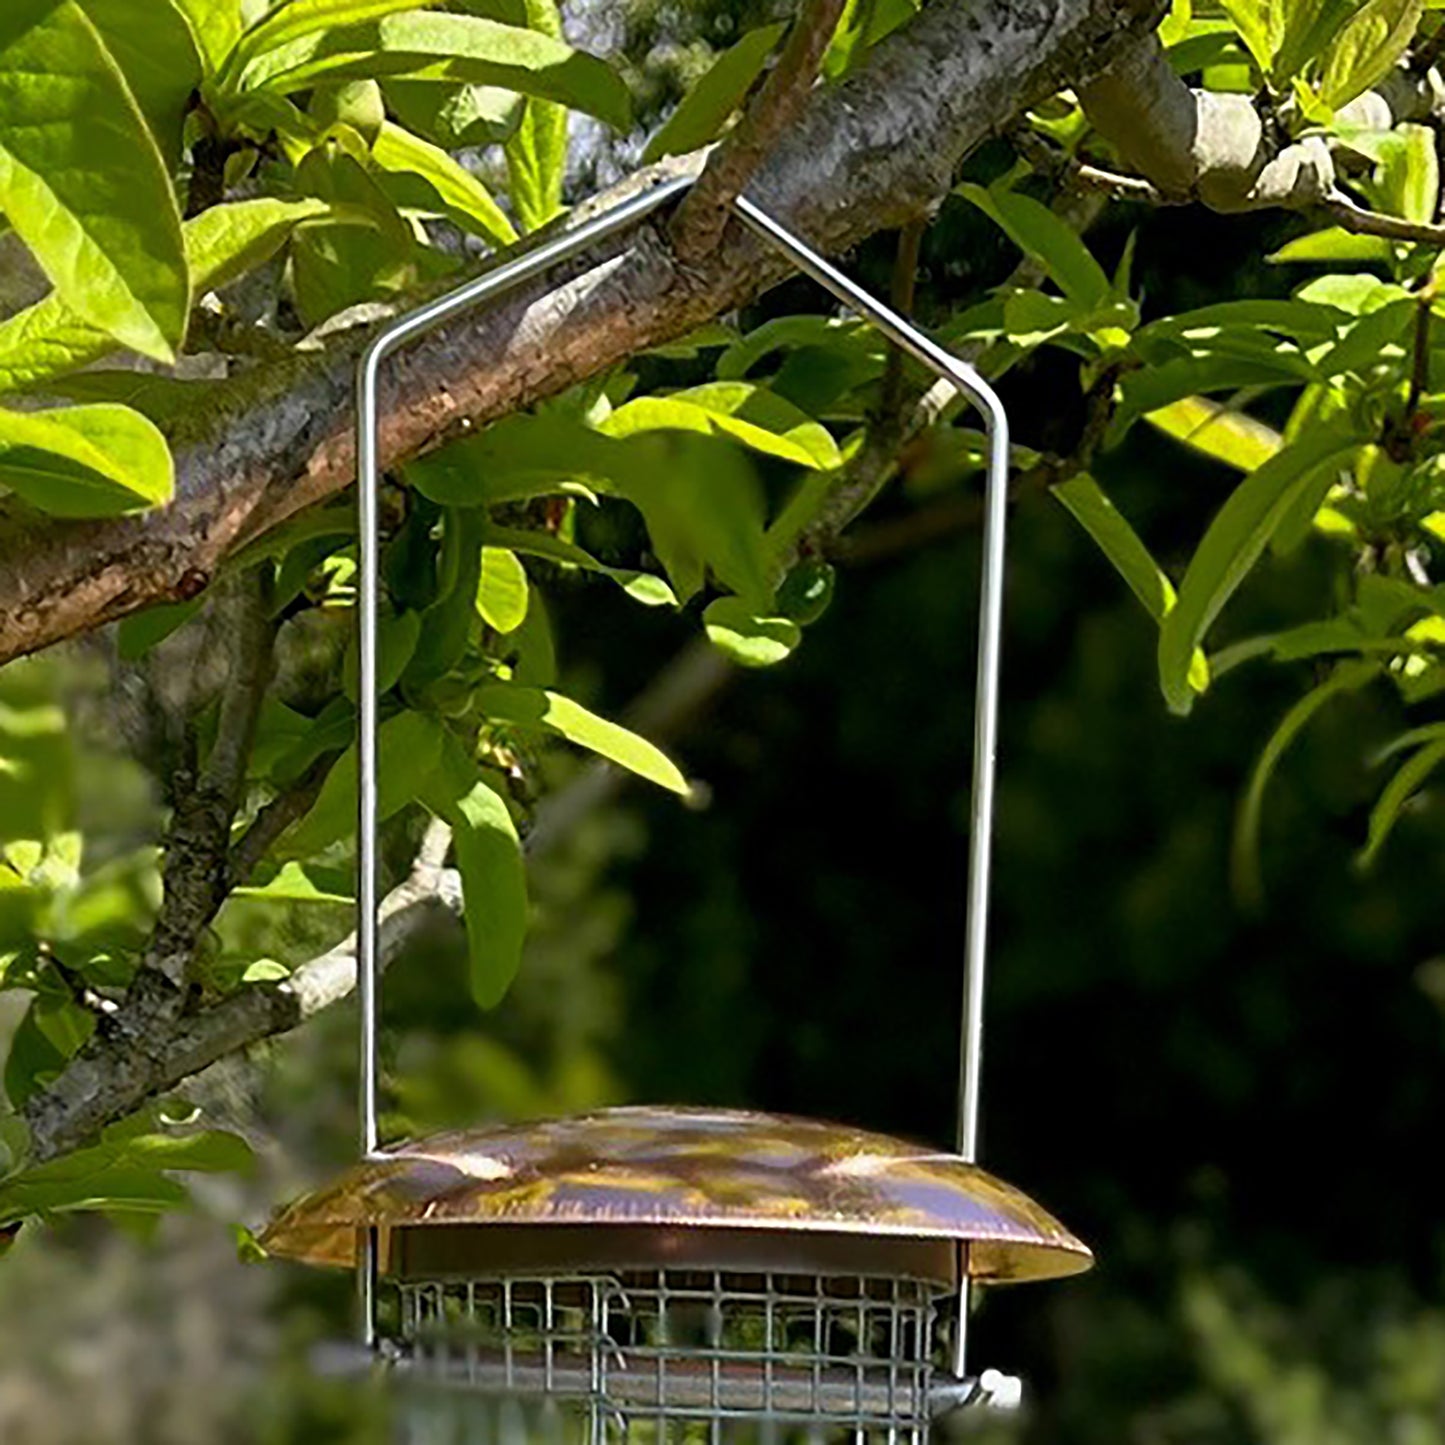 2 x Copper Style Hanging Bird Nut Feeder